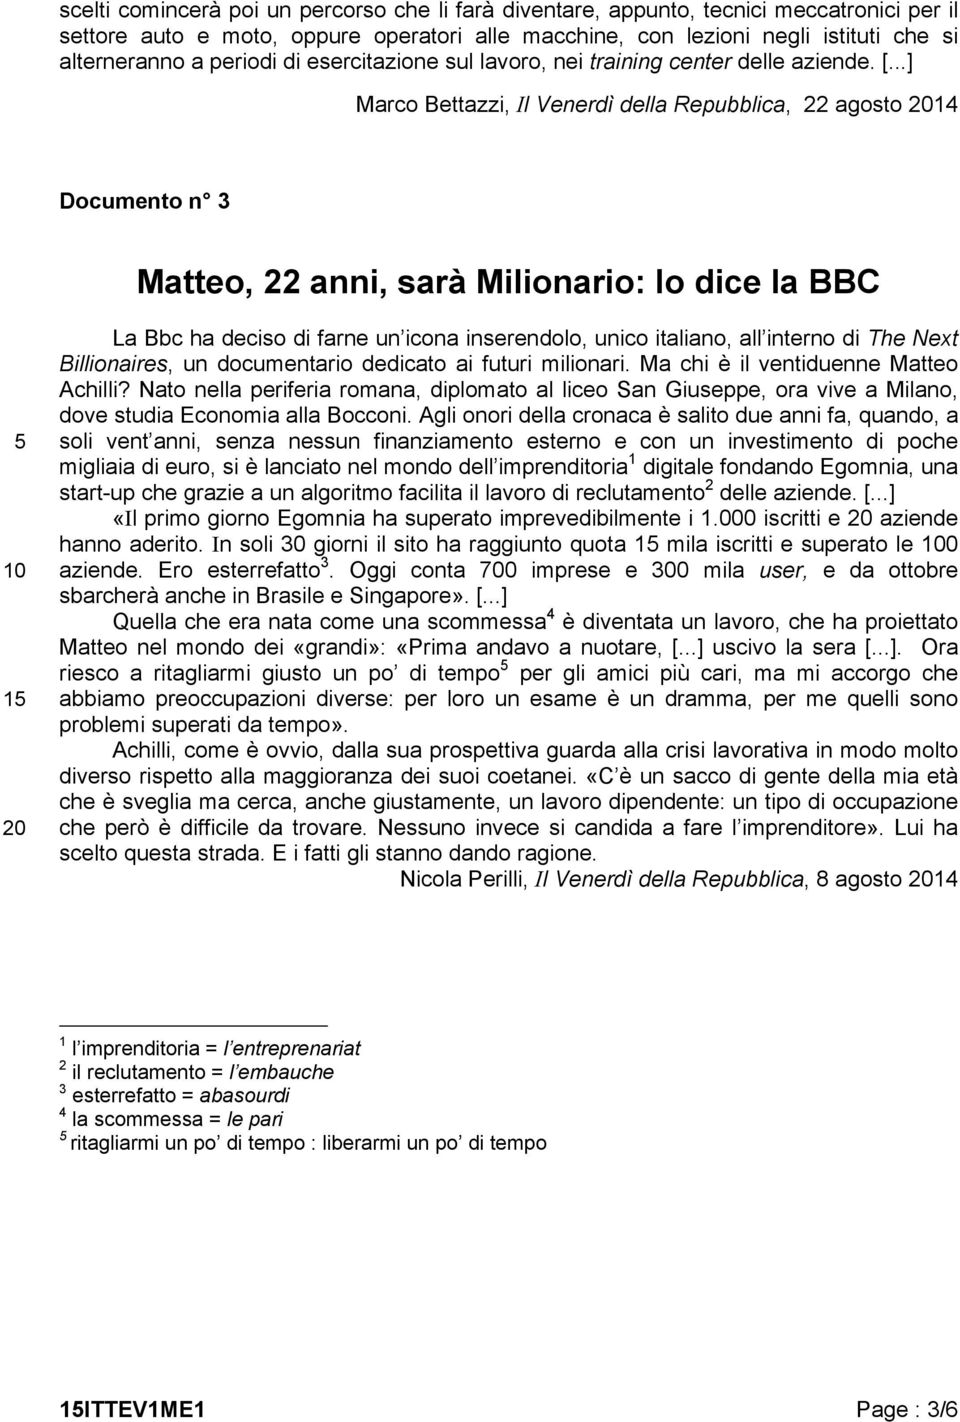 ..] Marco Bettazzi, Il Venerdì della Repubblica, 22 agosto 2014 Documento n 3 Matteo, 22 anni, sarà Milionario: lo dice la BBC 5 10 15 20 La Bbc ha deciso di farne un icona inserendolo, unico